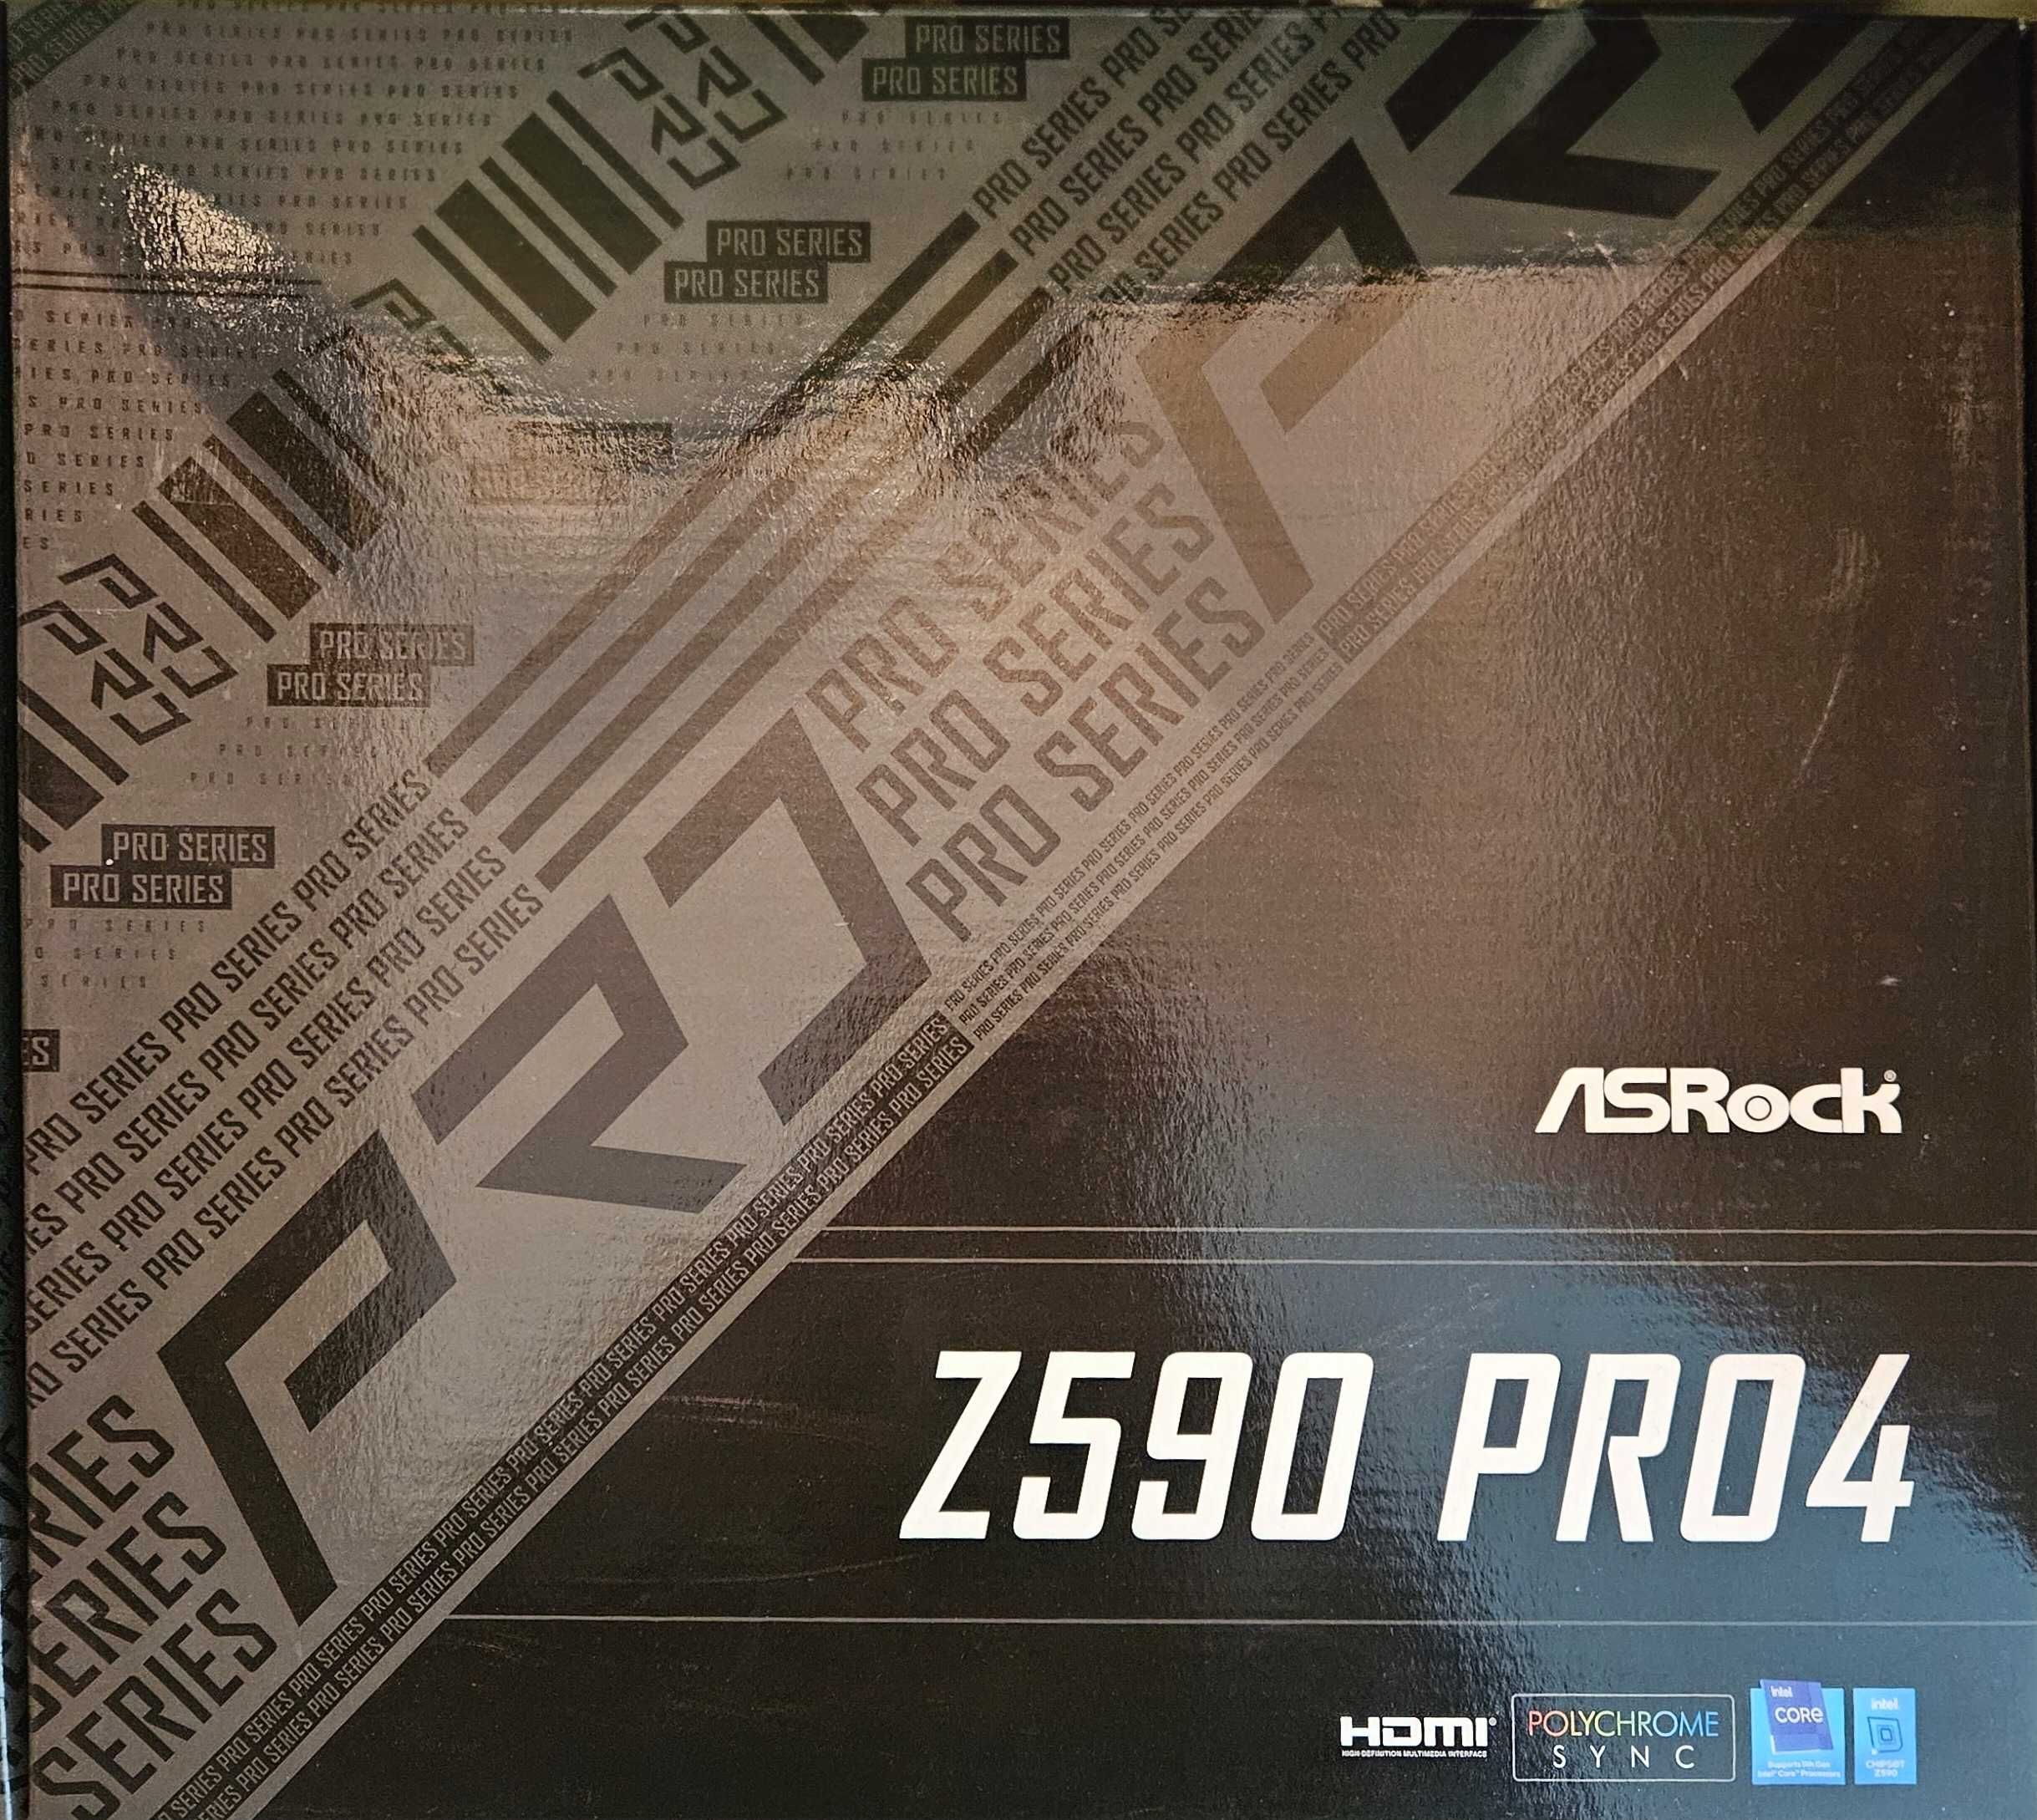 Rig - Geforce RTX  3090